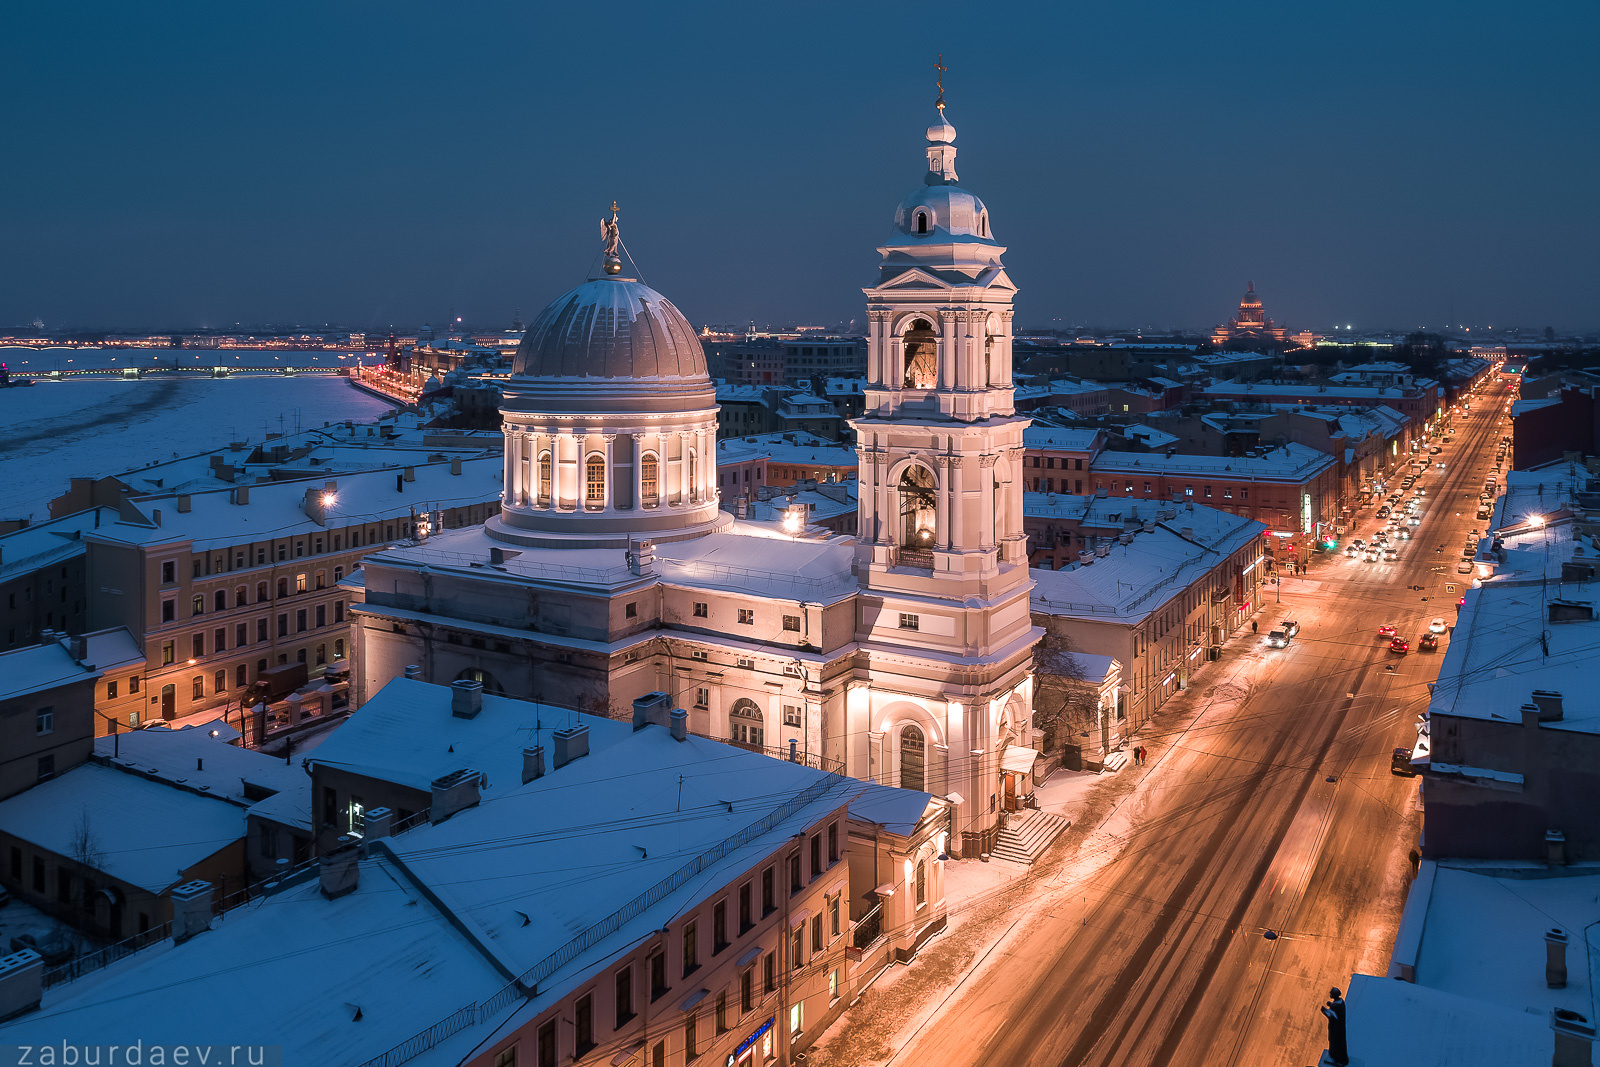 Церковь Святой Екатерины у Тучкова моста россия петербург вечер зима аэрофотосъемка дрон